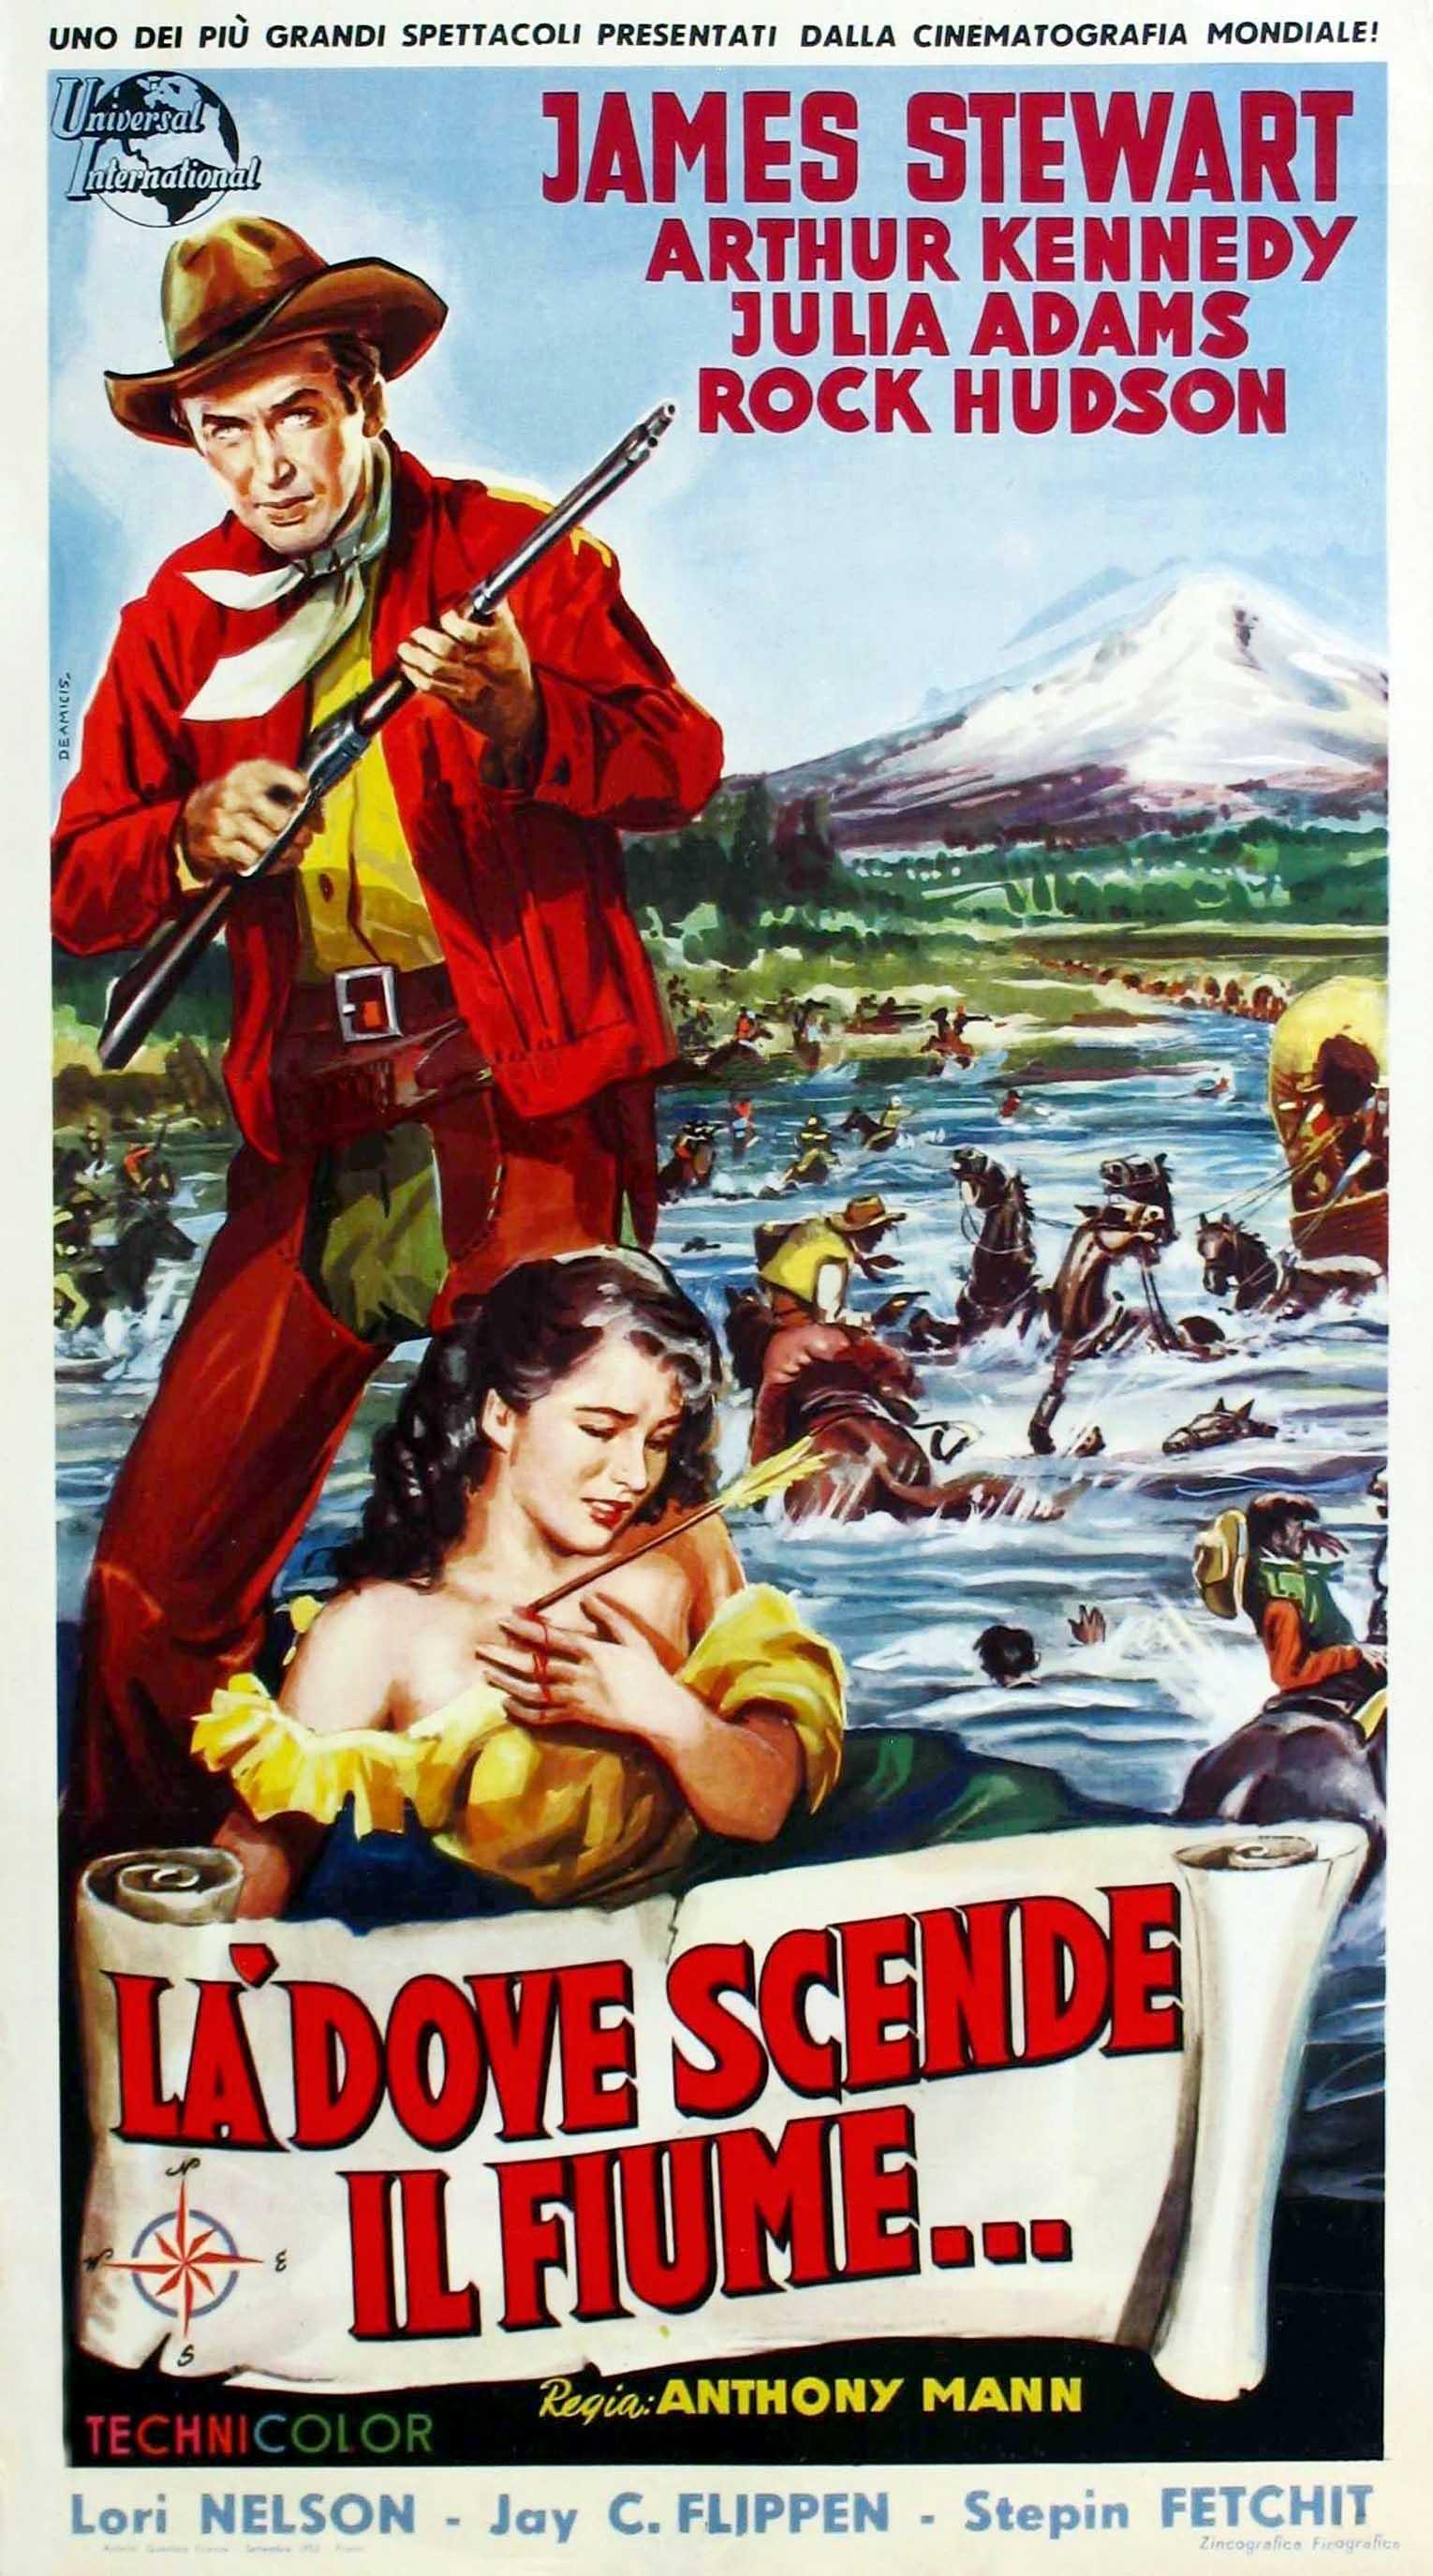 Постер фильма Излучина реки | Bend of the River